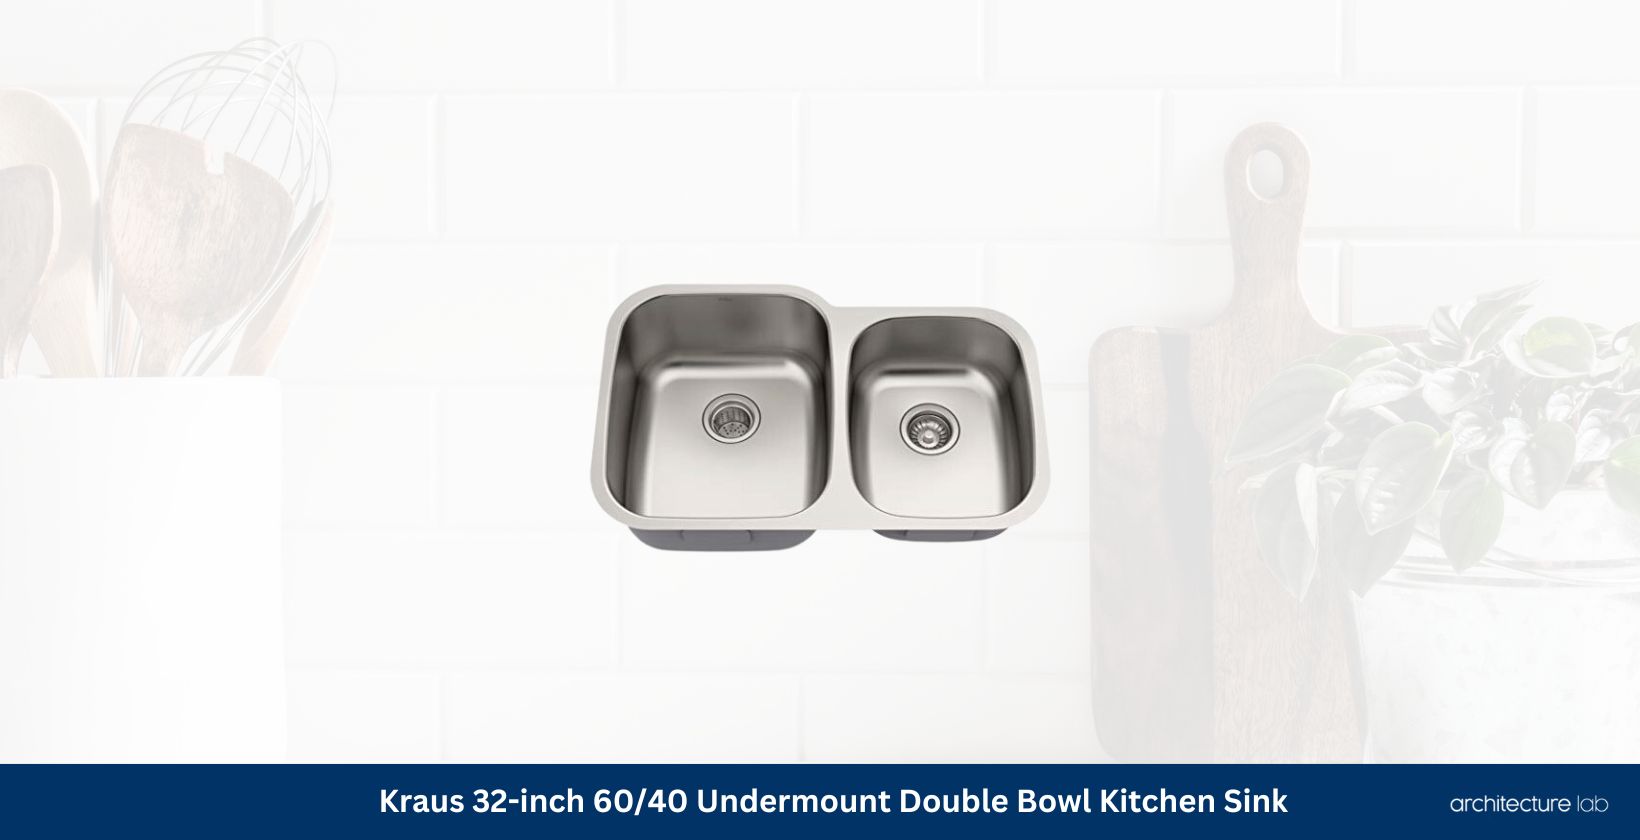 Kraus kbu24 32 inch undermount double bowl kitchen sink